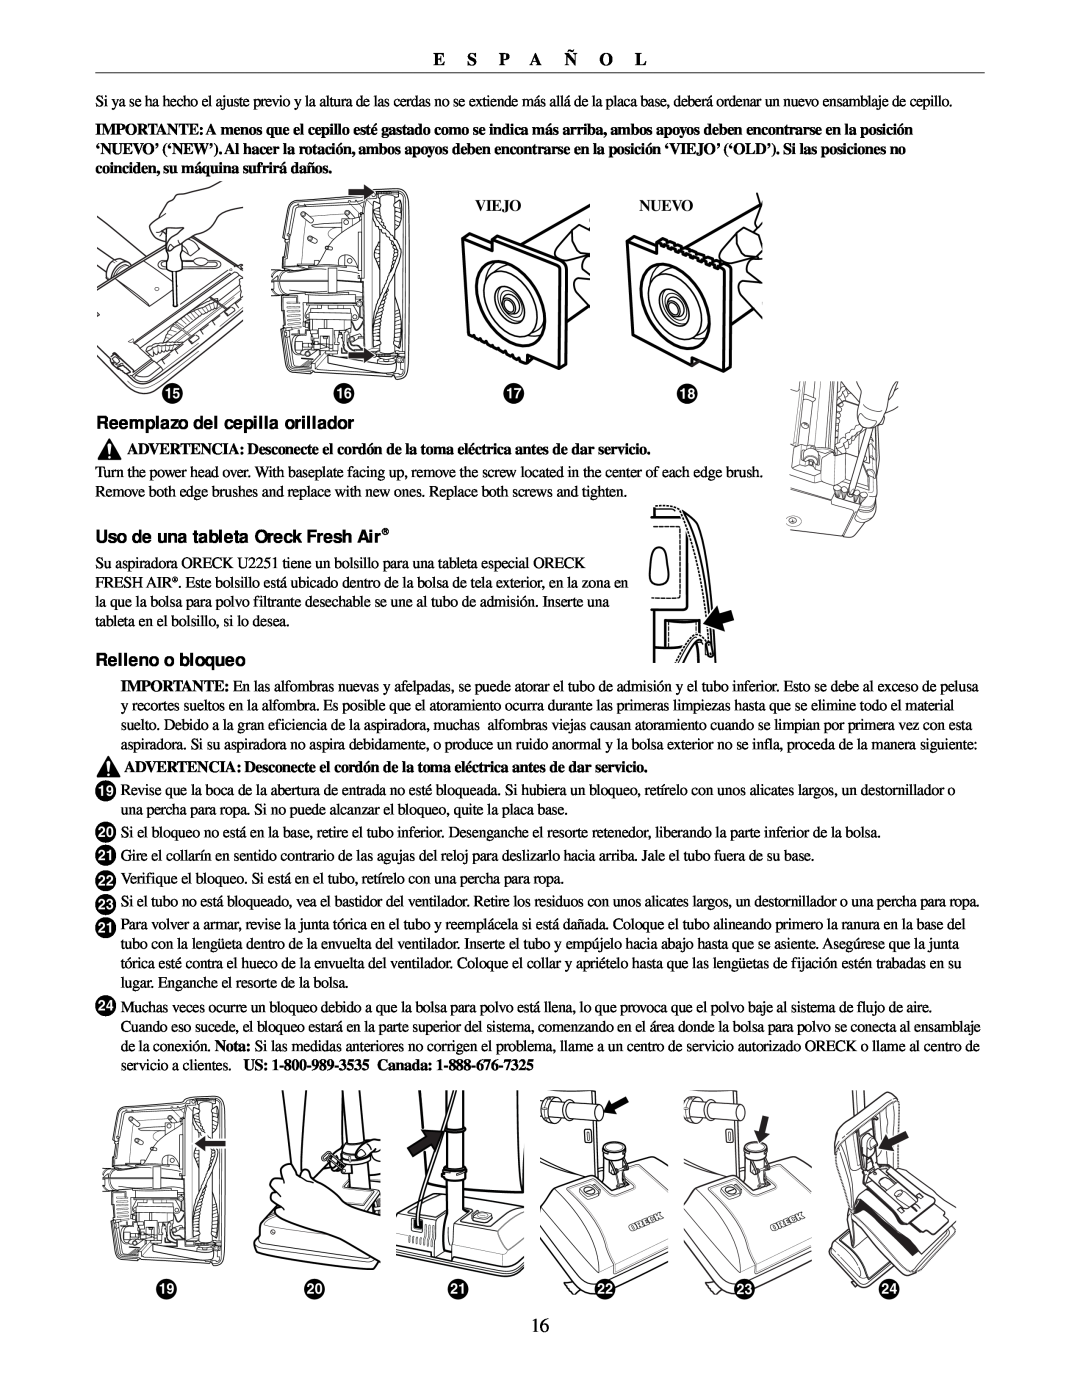 Oreck U2251 manual Reemplazo del cepilla orillador, Uso de una tableta Oreck Fresh Air, Relleno o bloqueo, E S P A Ñ O L 